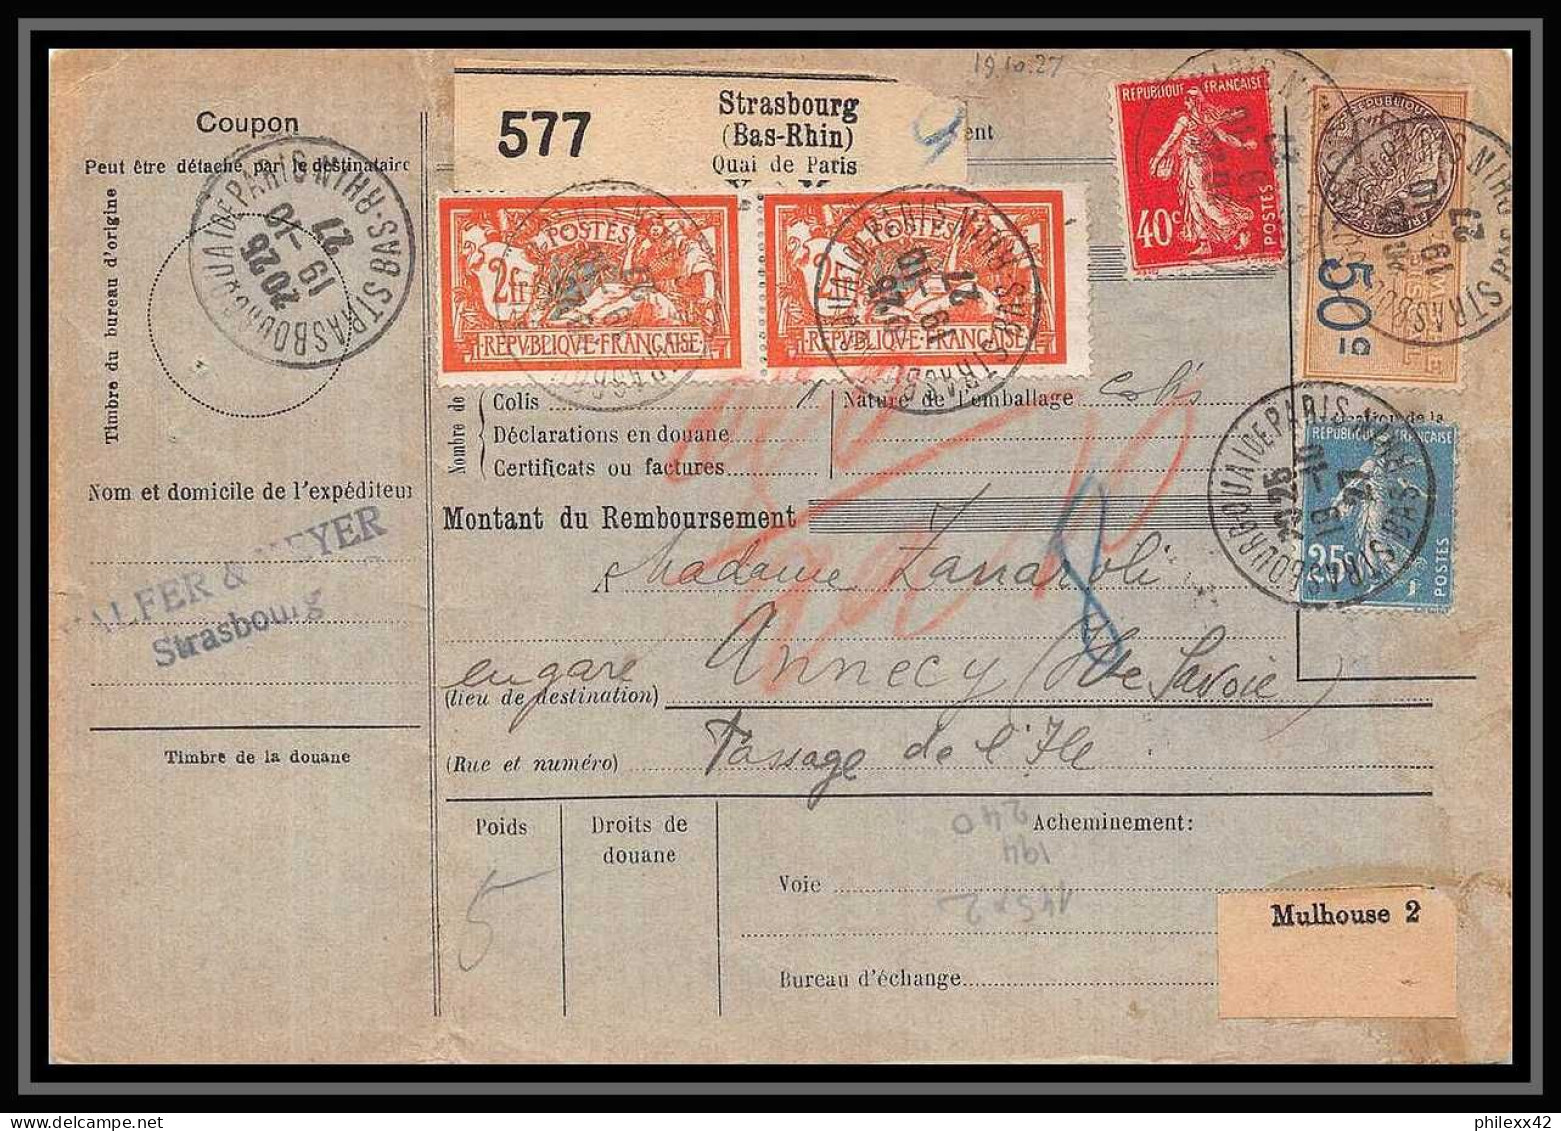 25235/ Bulletin D'expédition France Colis Postaux Fiscal Bas-Rhin Strasbourg Pour Annecy 1927 Haute Savoie Merson N°145 - Storia Postale